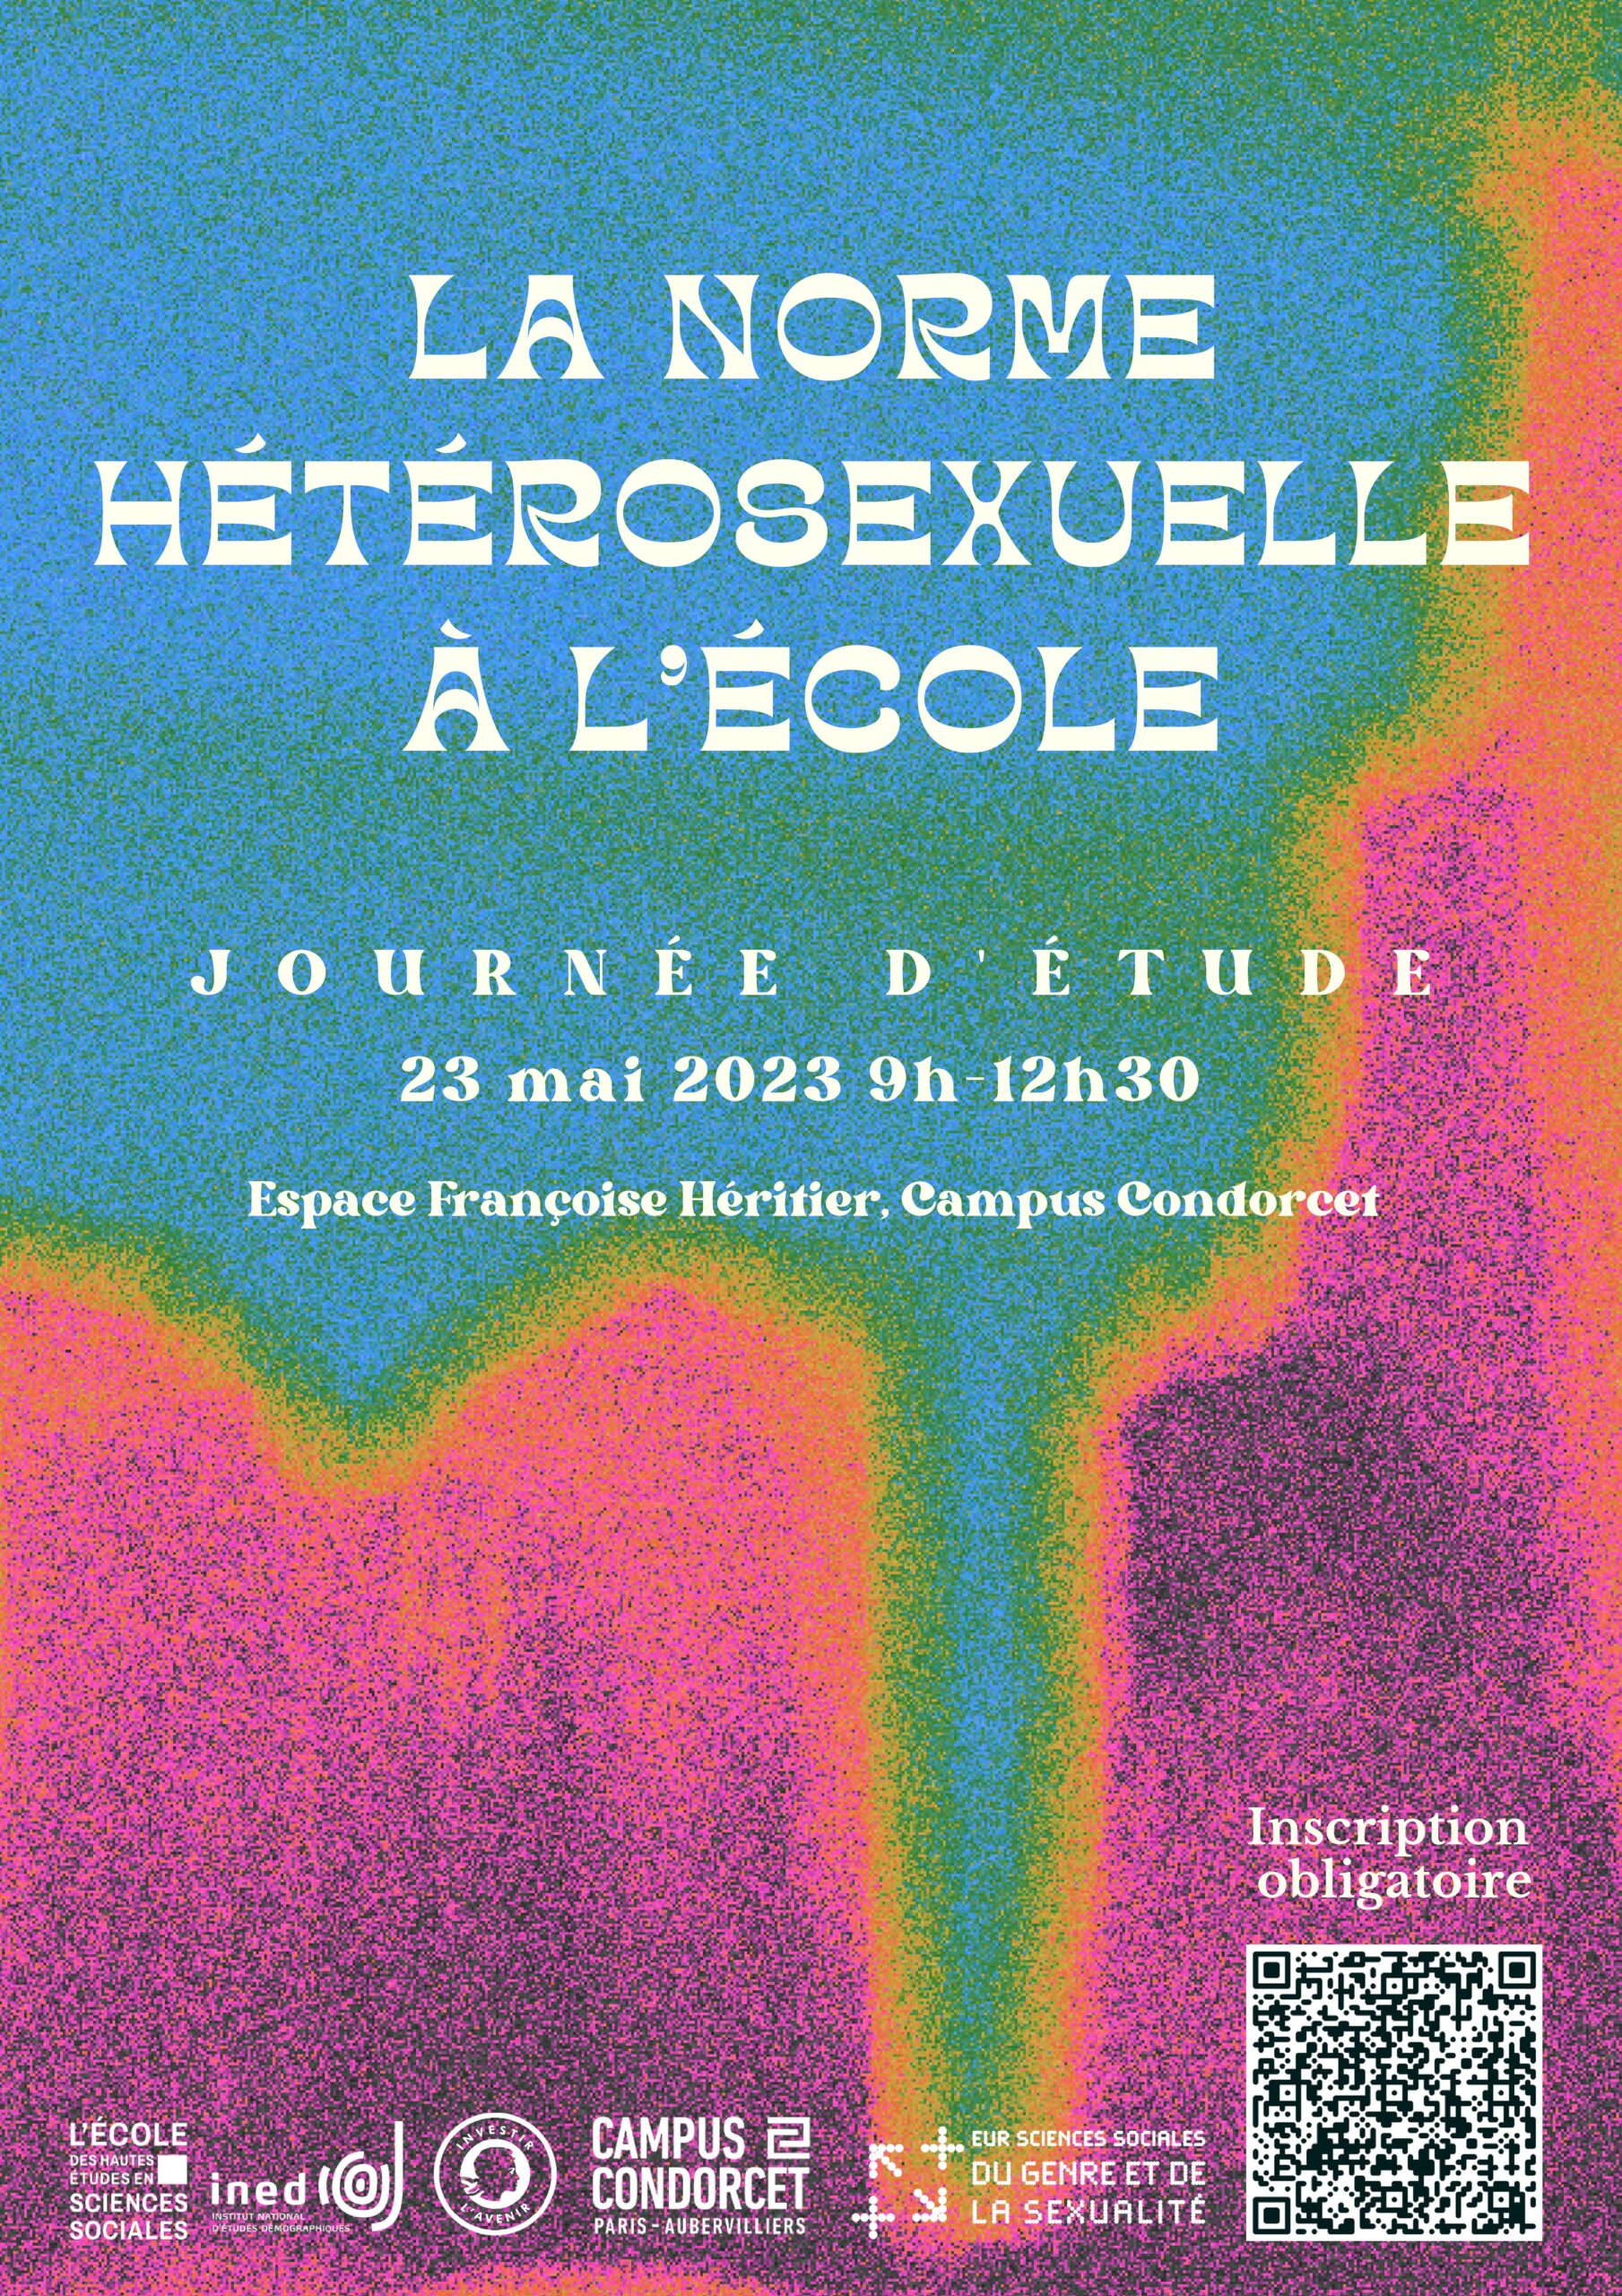 Lien vers le programme de la journée d'études La norme hétérosexuelle à l'école (PDF, 5,9 Mo)